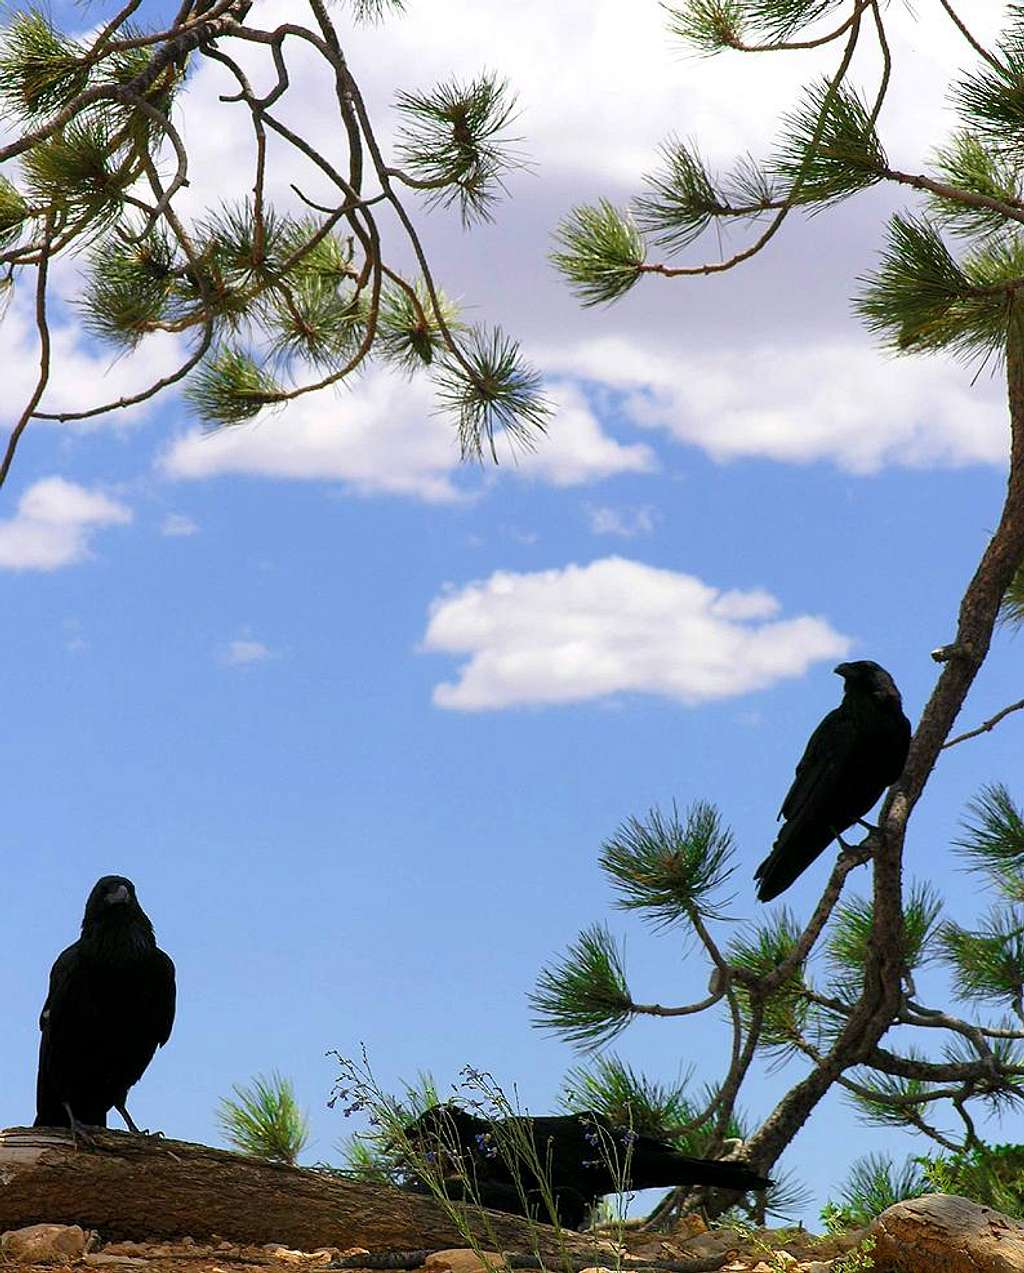 Ravens at Bryce Canyon